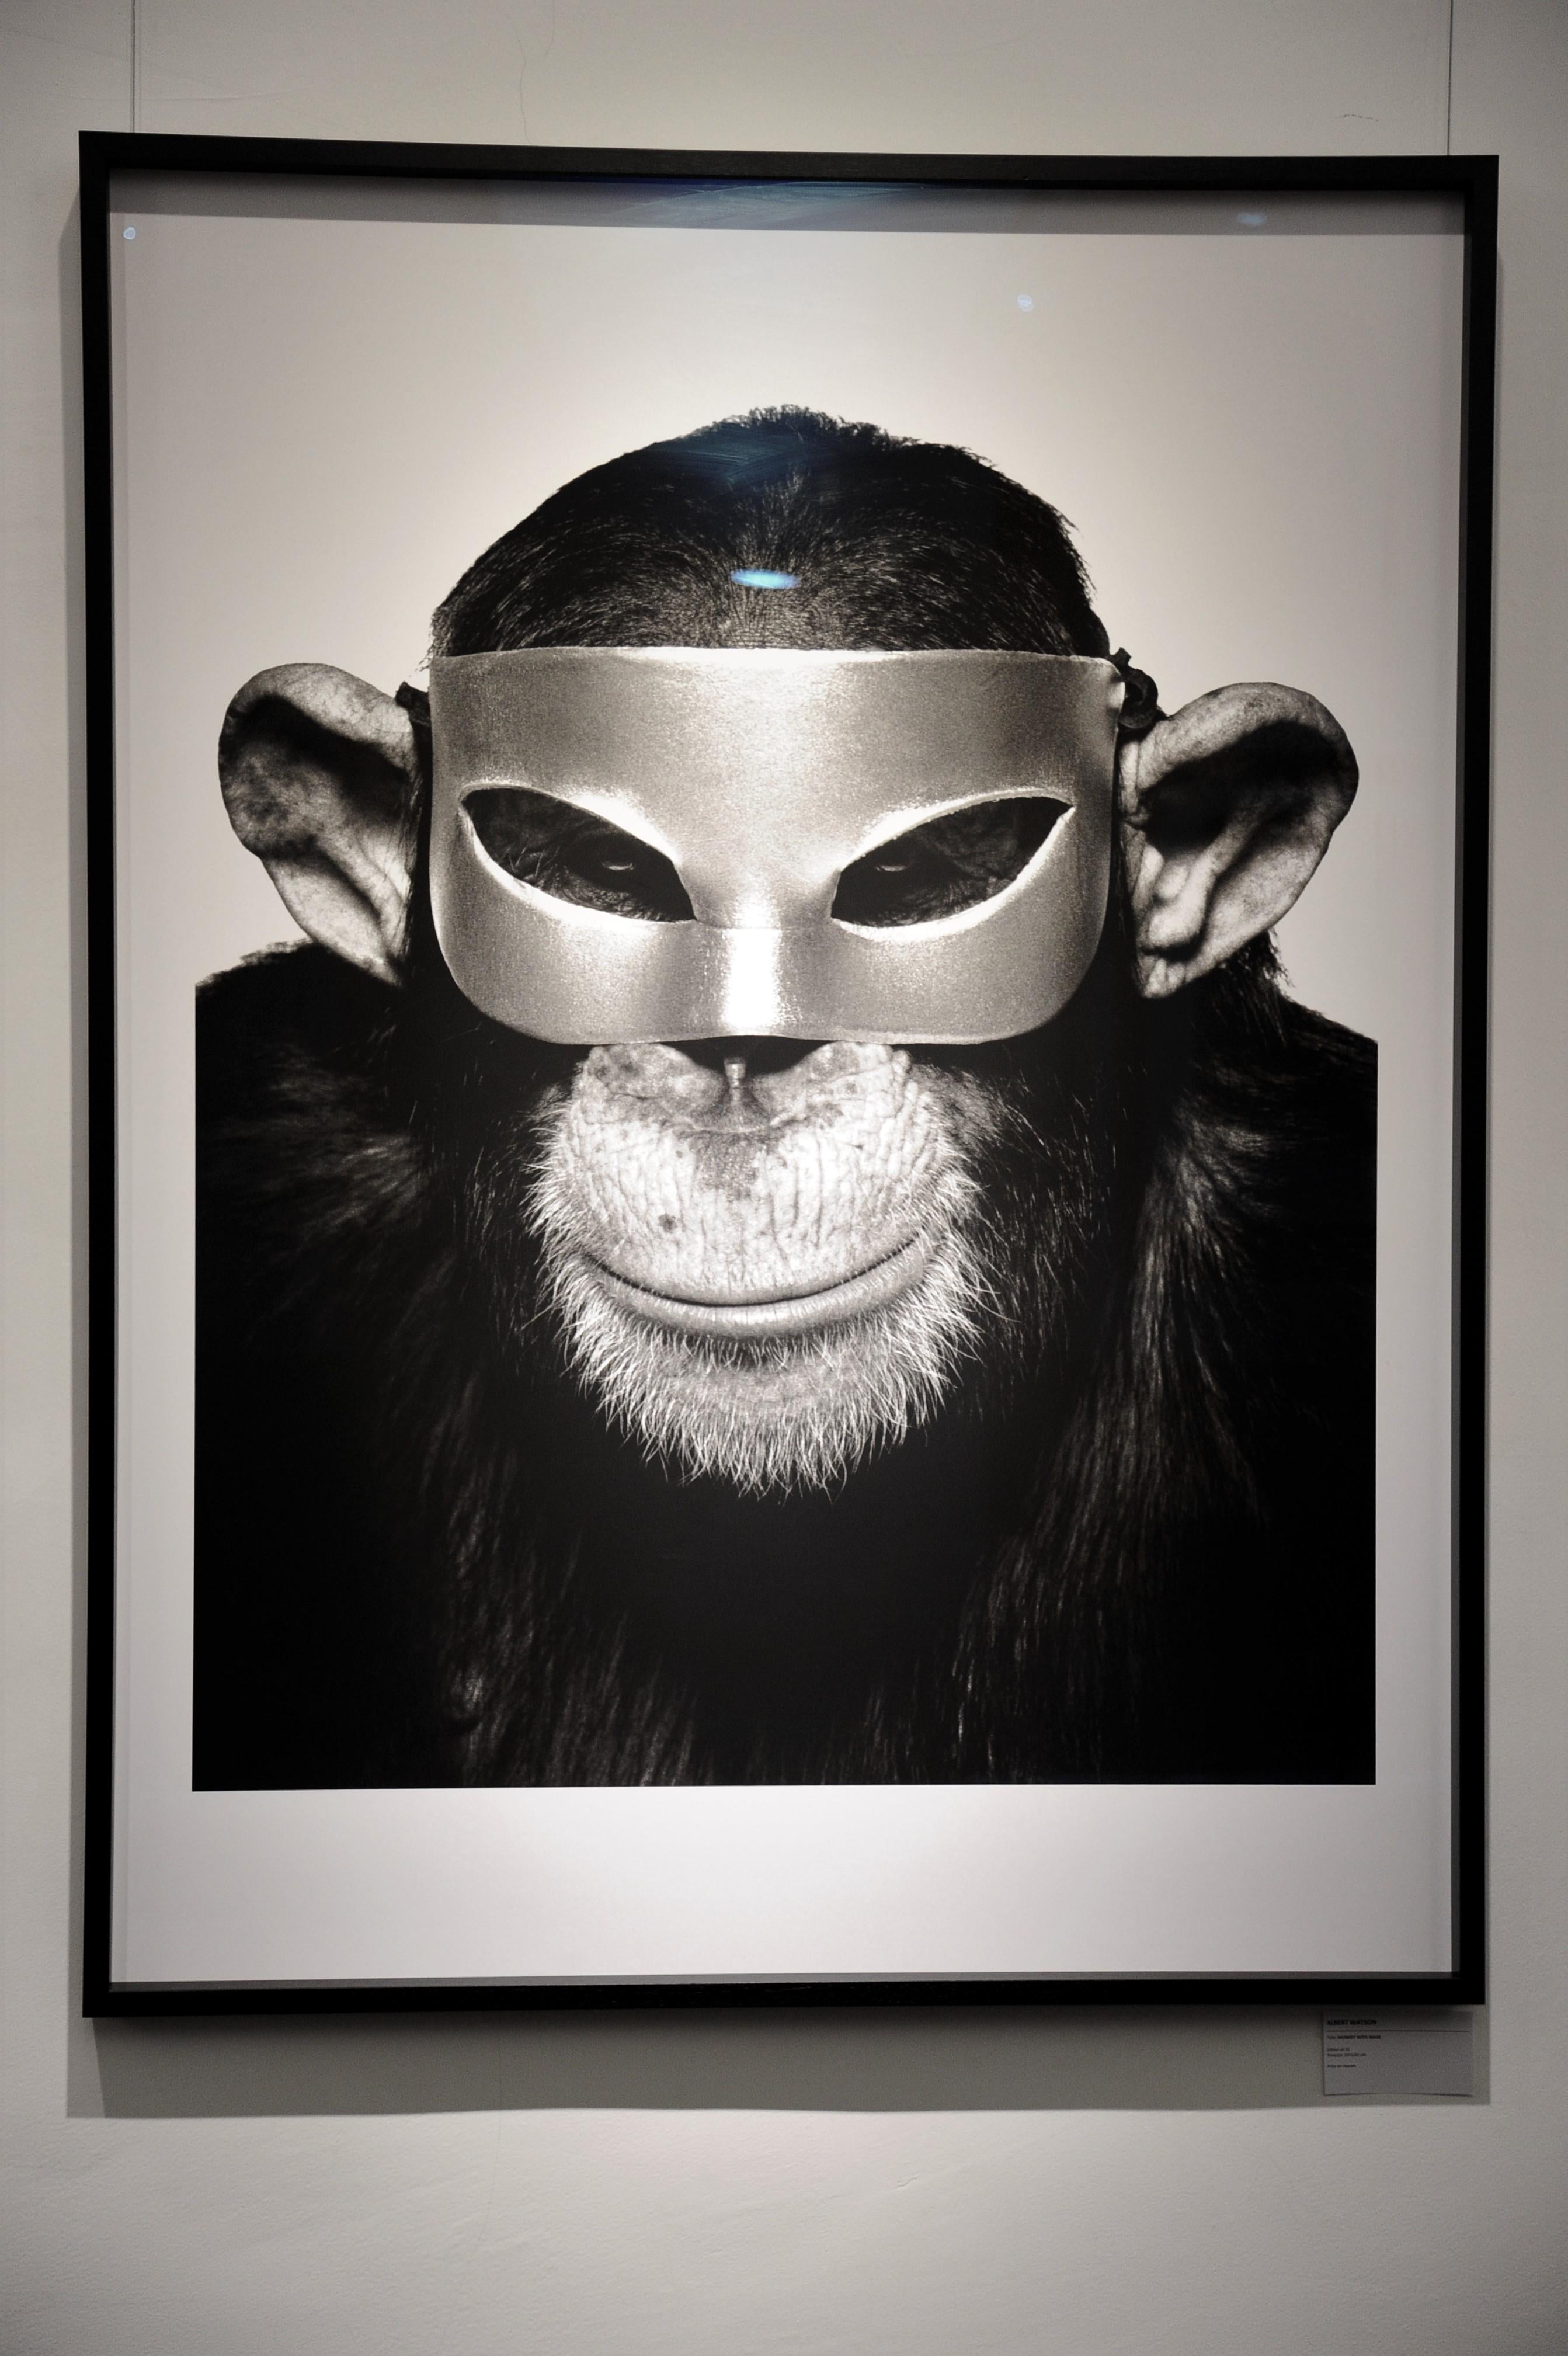 Affen mit Maske – Tierporträt mit Maske, Kunstfotografie, 1992 – Photograph von Albert Watson